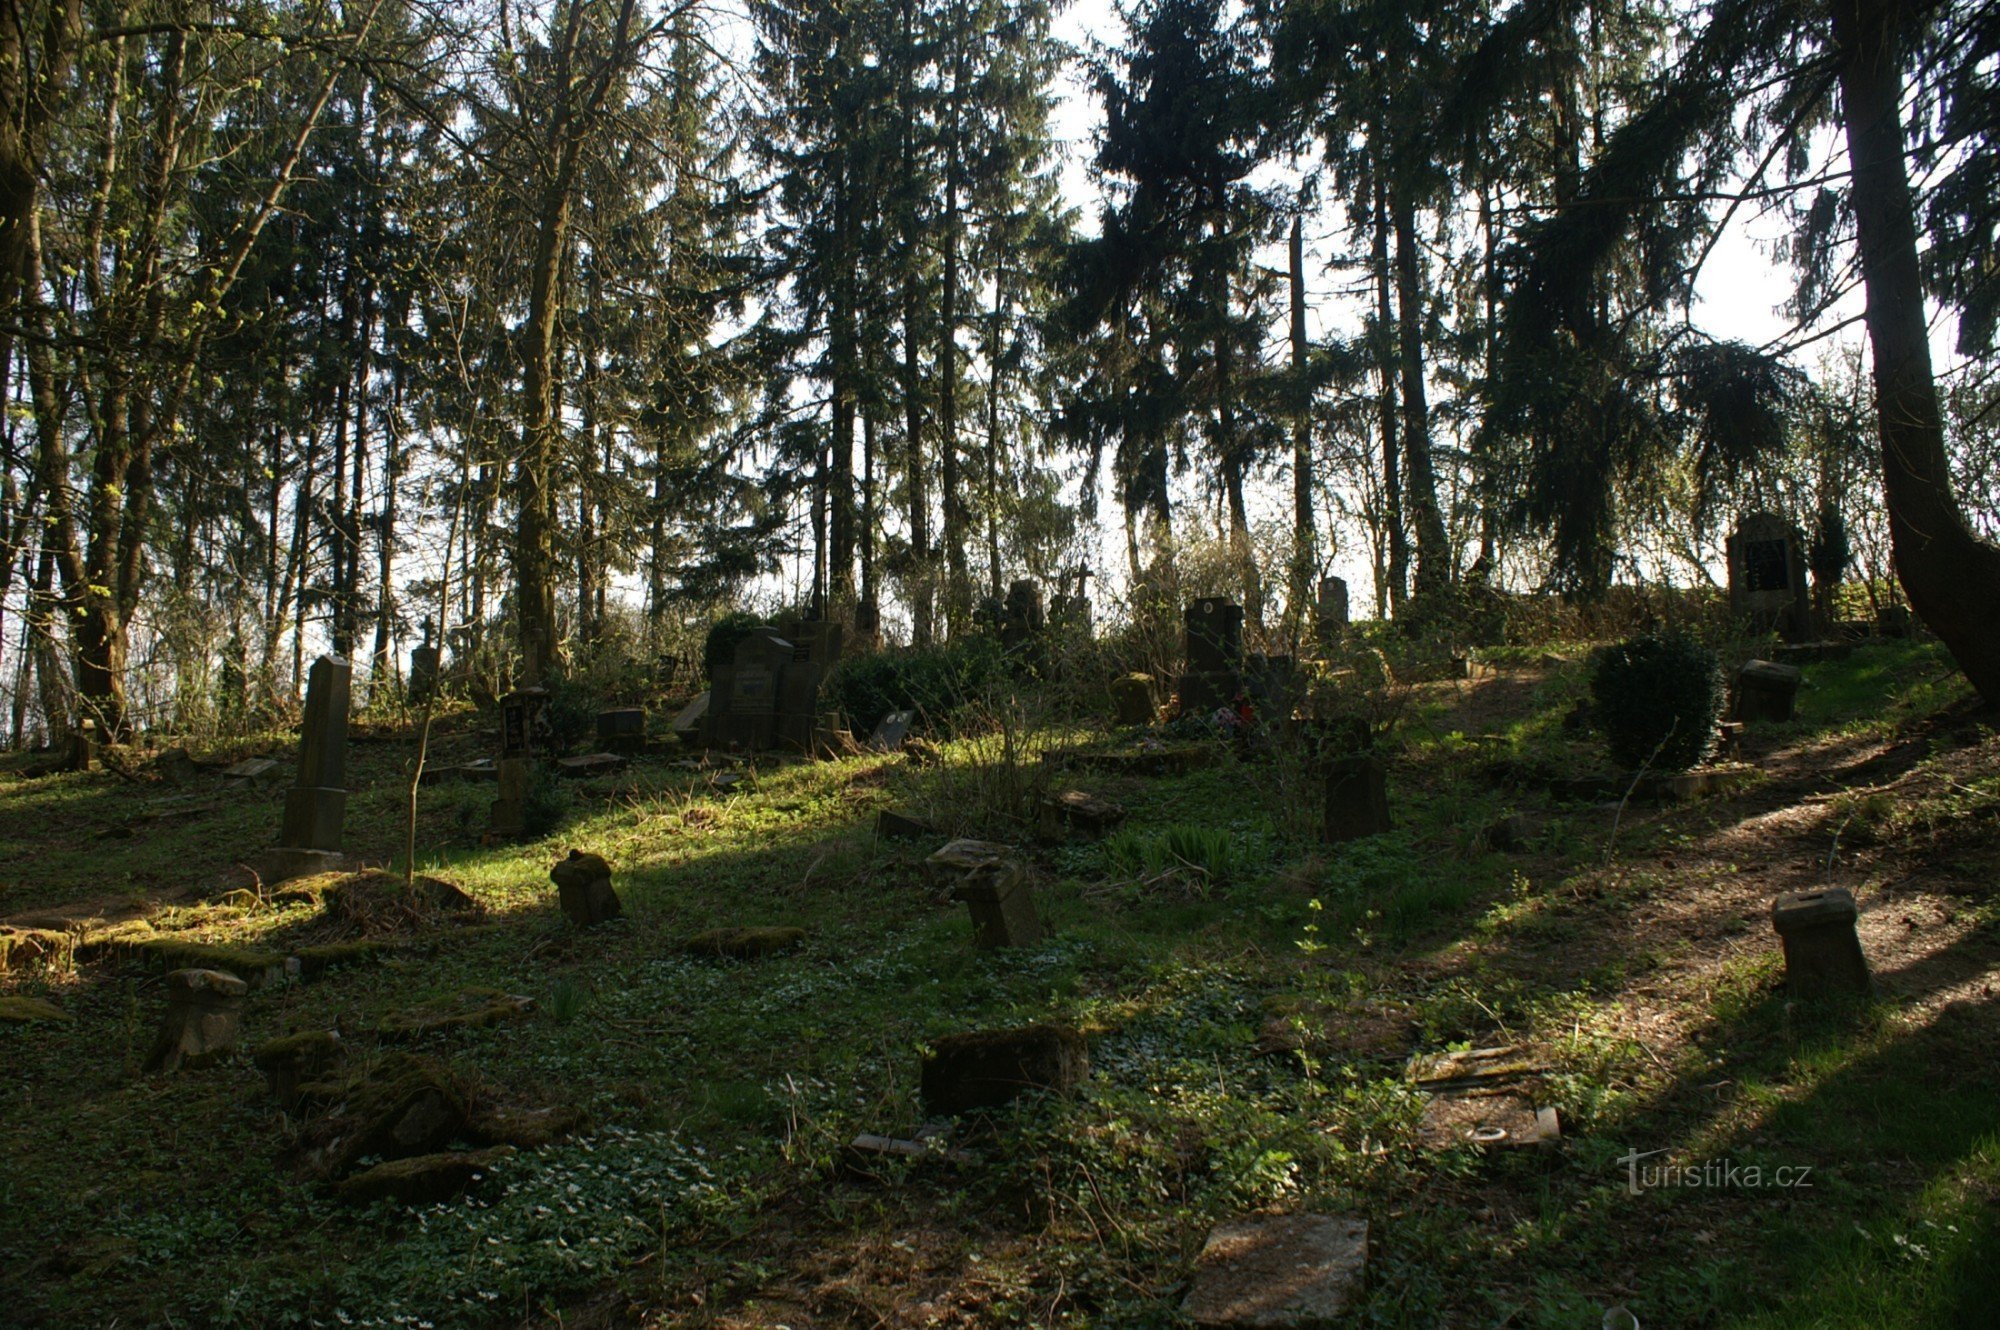 tysk kyrkogård nära Maxov